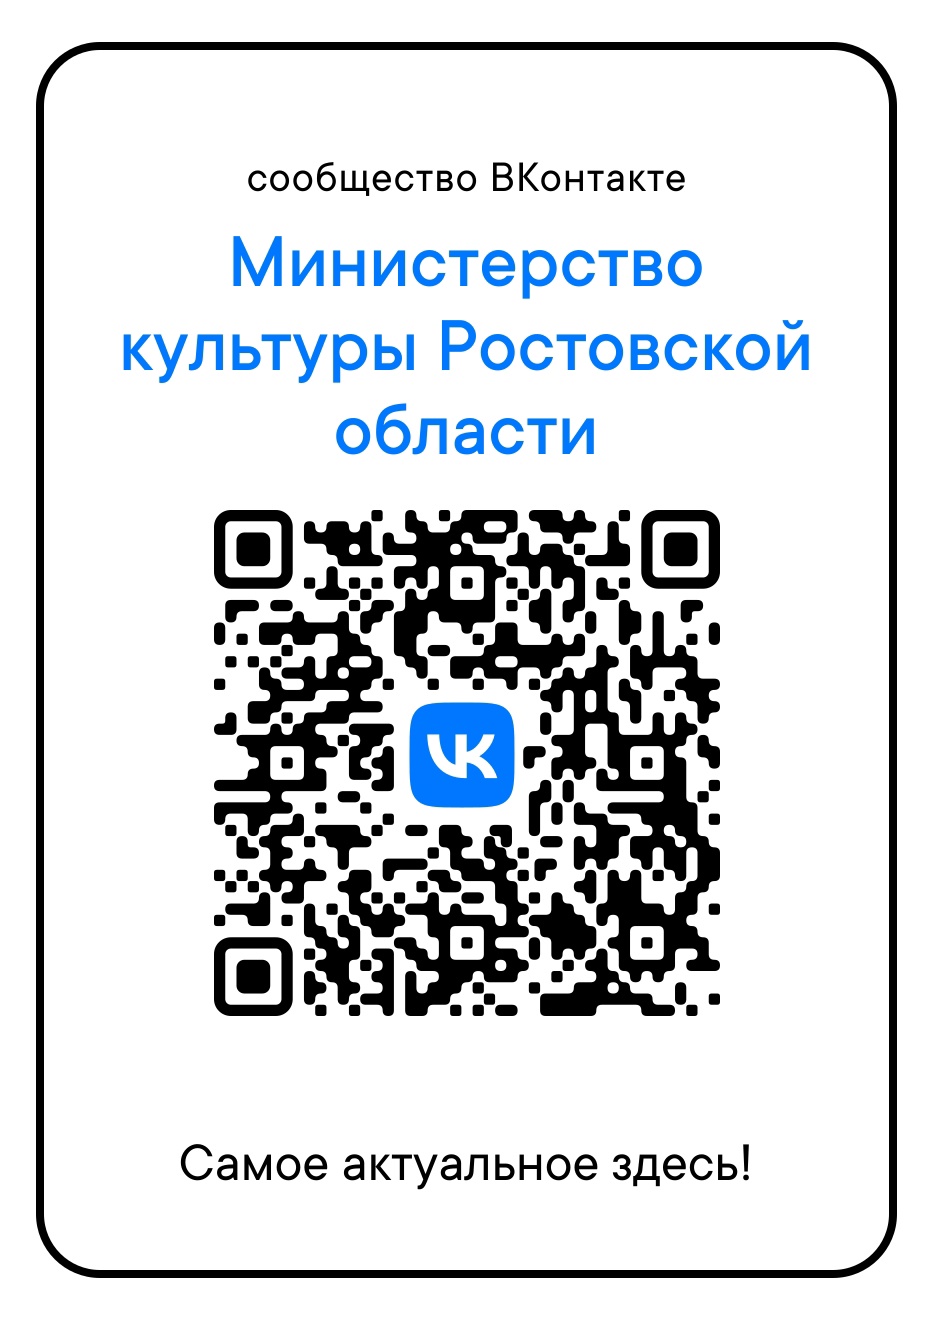 QR-код официальной группы министерства культуры Ростовской области в социальной сети "ВКонтакте"